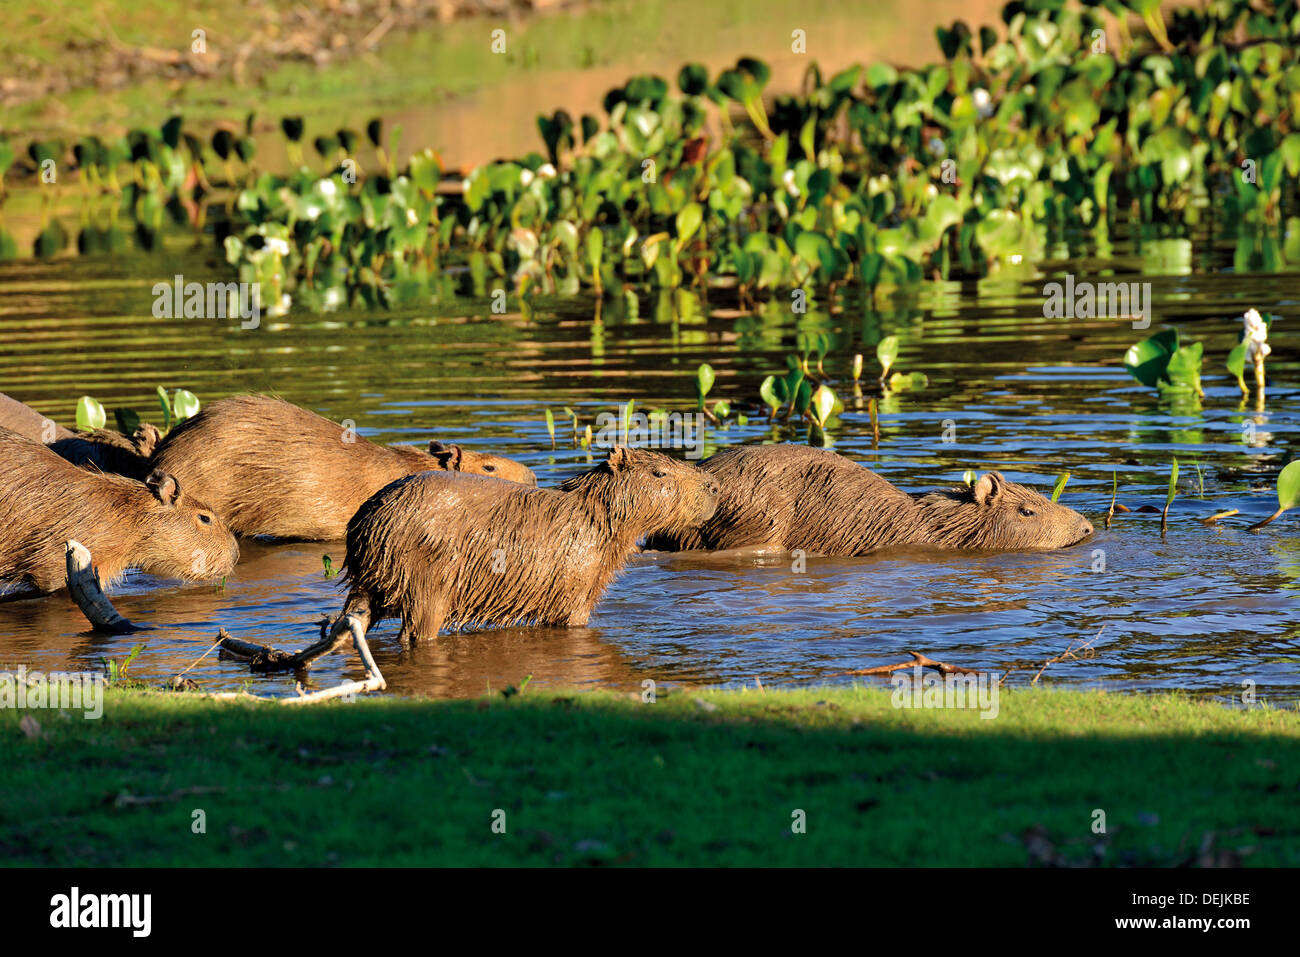 Brésil, Pantanal : Famille de capybaras (Hydrochoerus hydrochaeris) entrant dans l'eau Banque D'Images